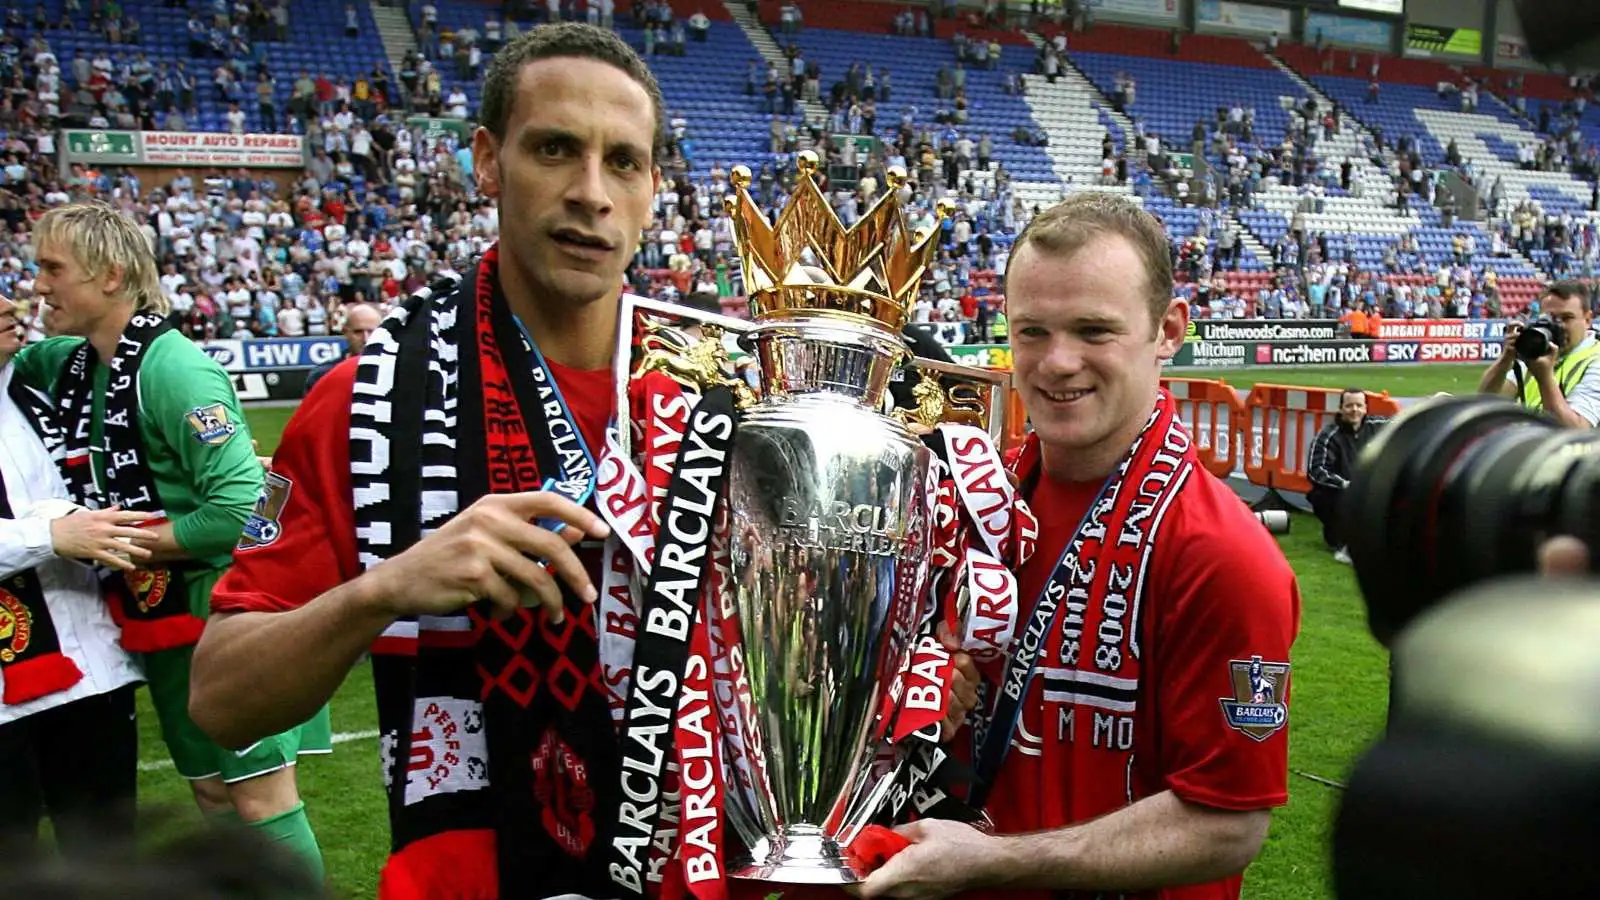 Man Utd duo Rio Ferdinand and Wayne Rooney